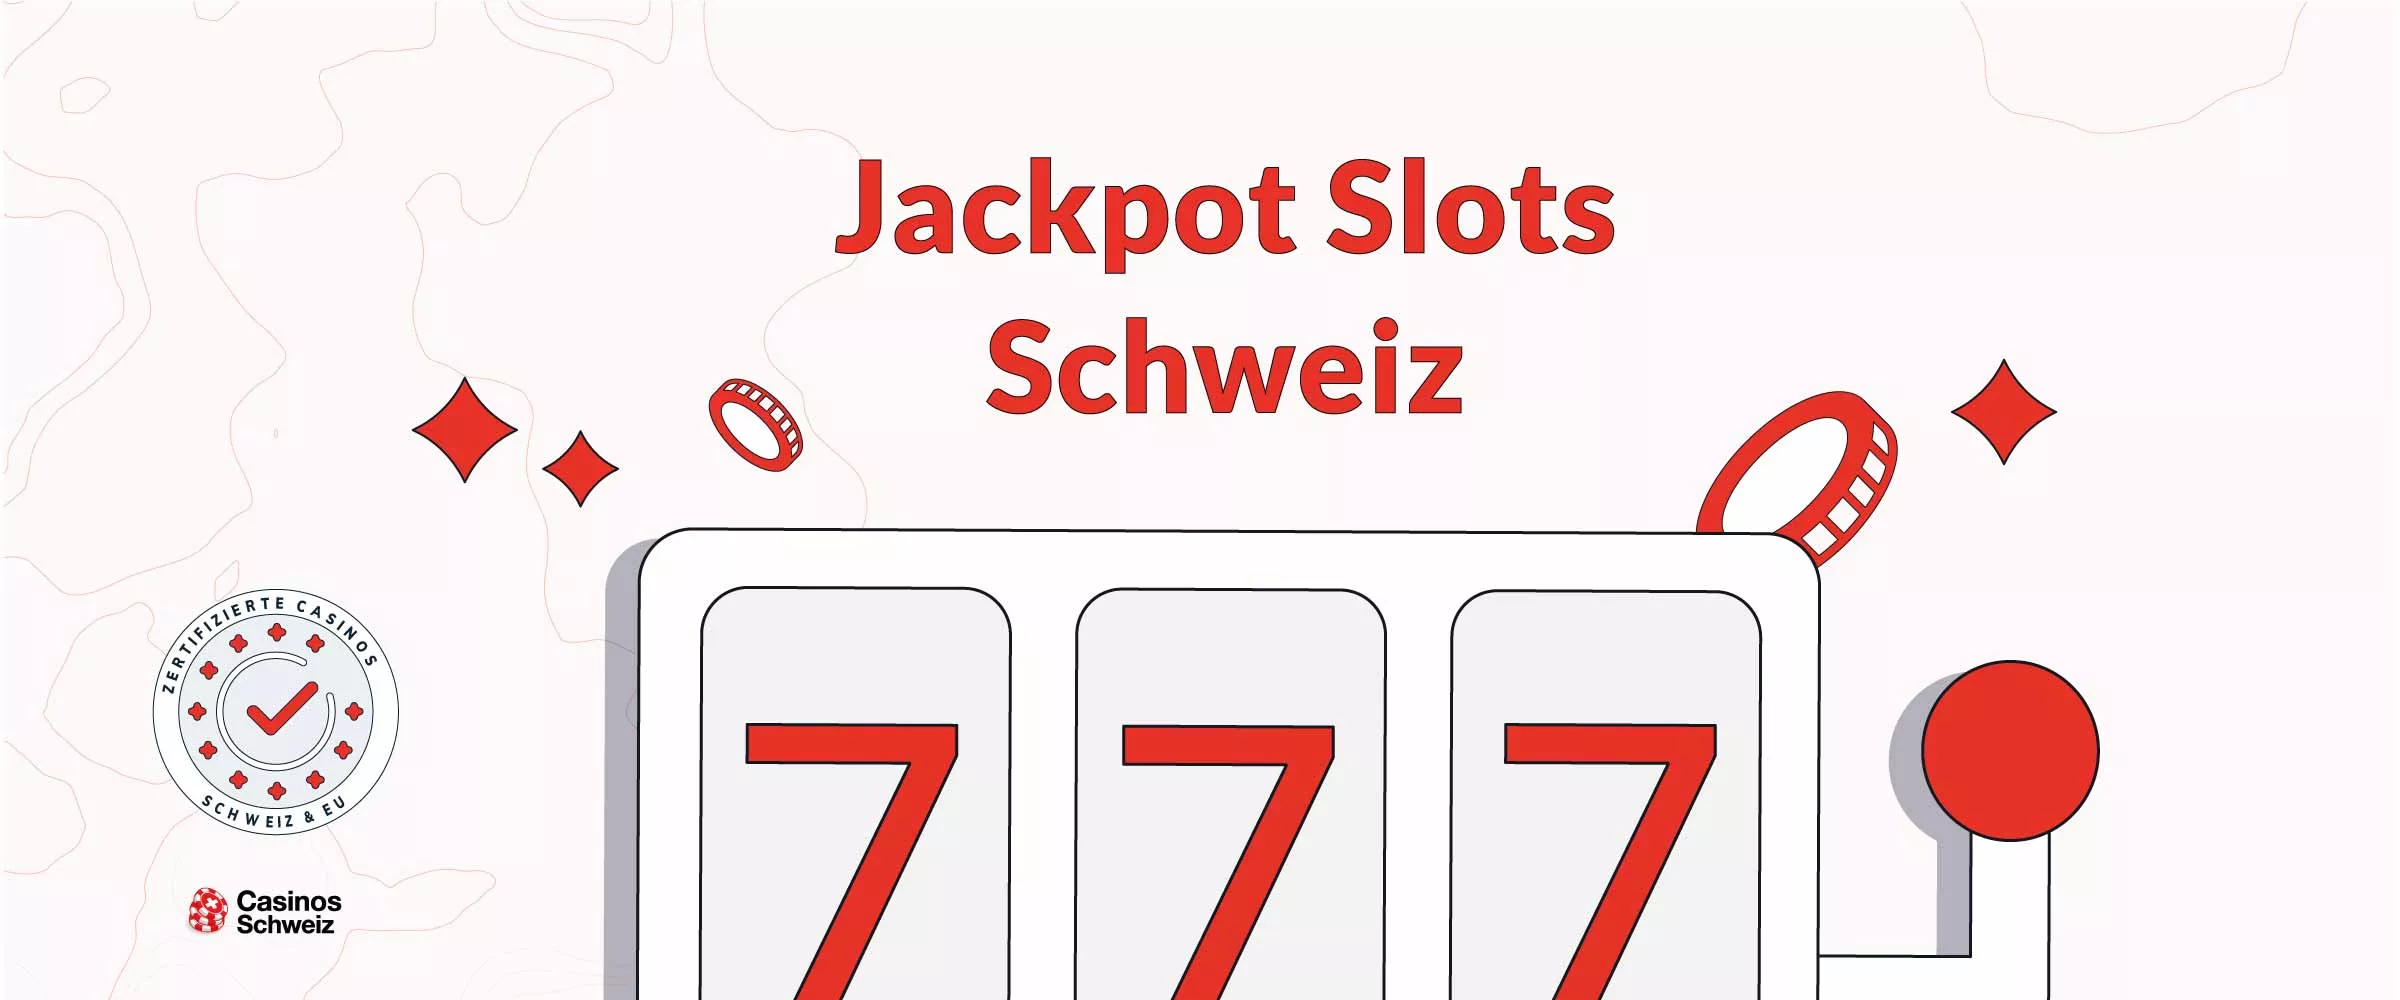 Jackpot Slots Schweiz 